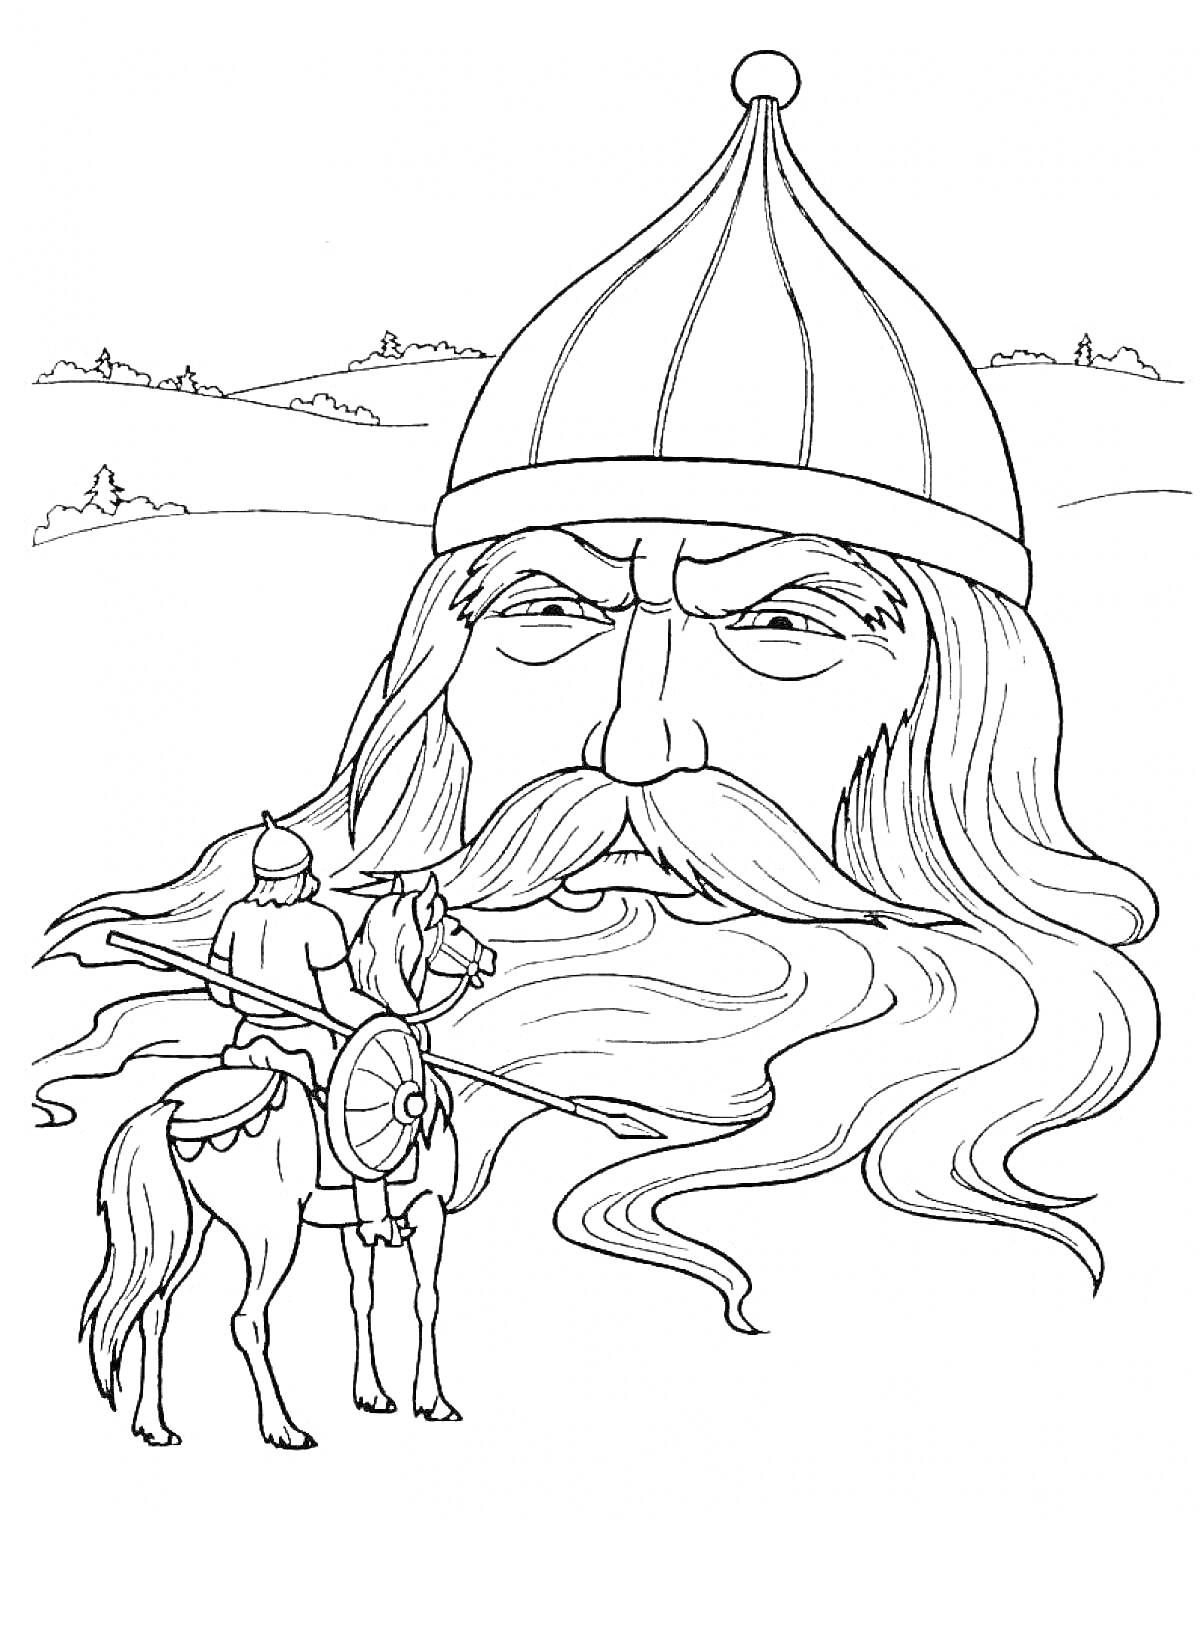 Раскраска Богатырь на коне перед головой великана с большим шлемом